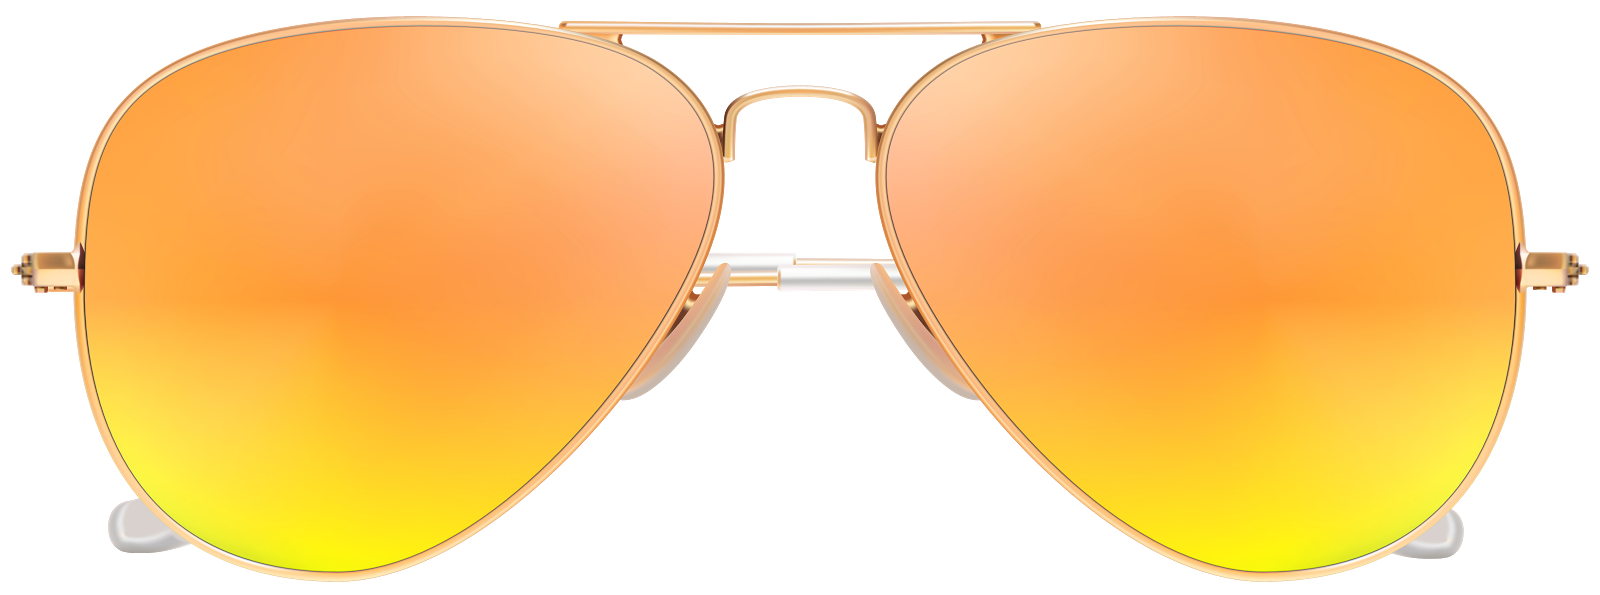 Glasses Download Transparent PNG Image